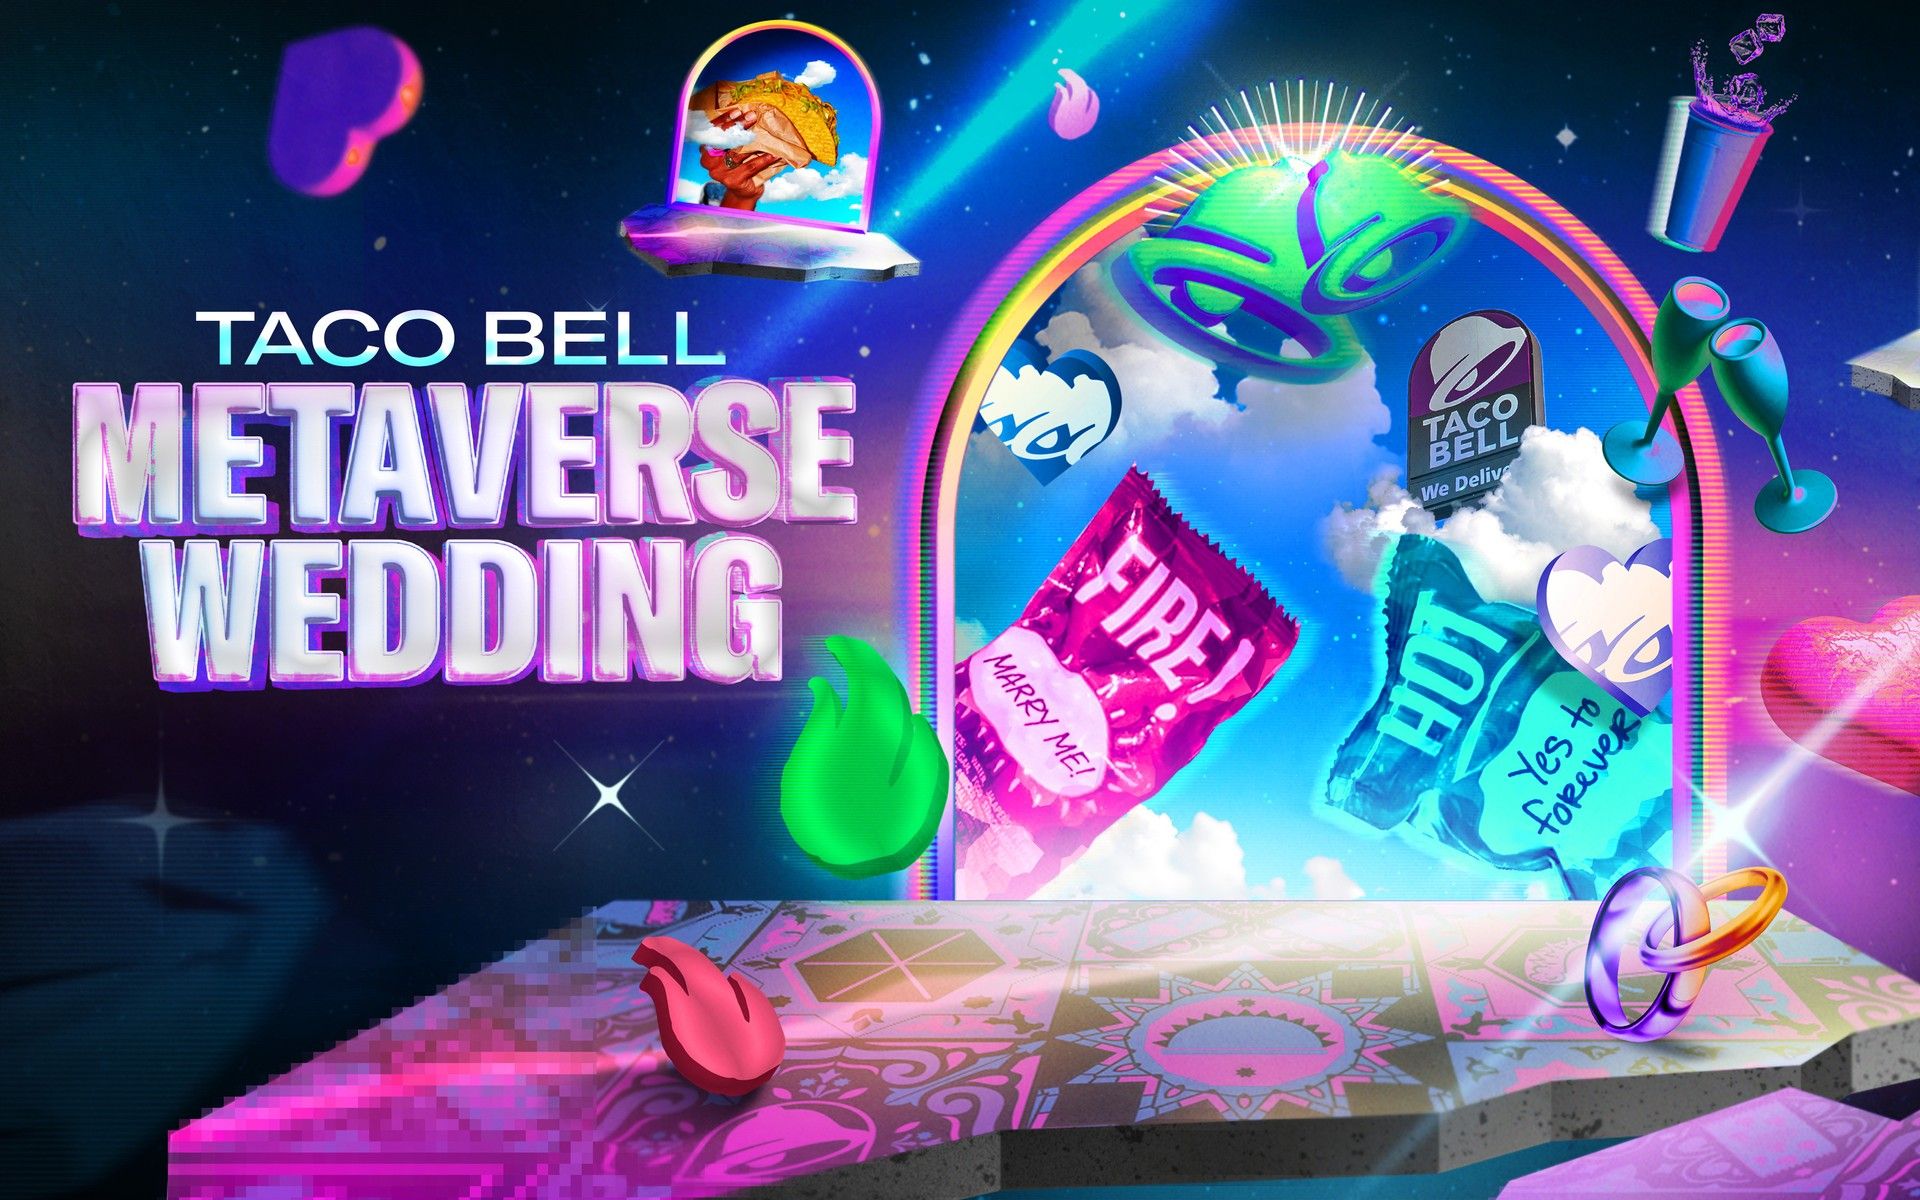 История свадьбы Taco Bell Metaverse: от Crunchwrap до Metaverse